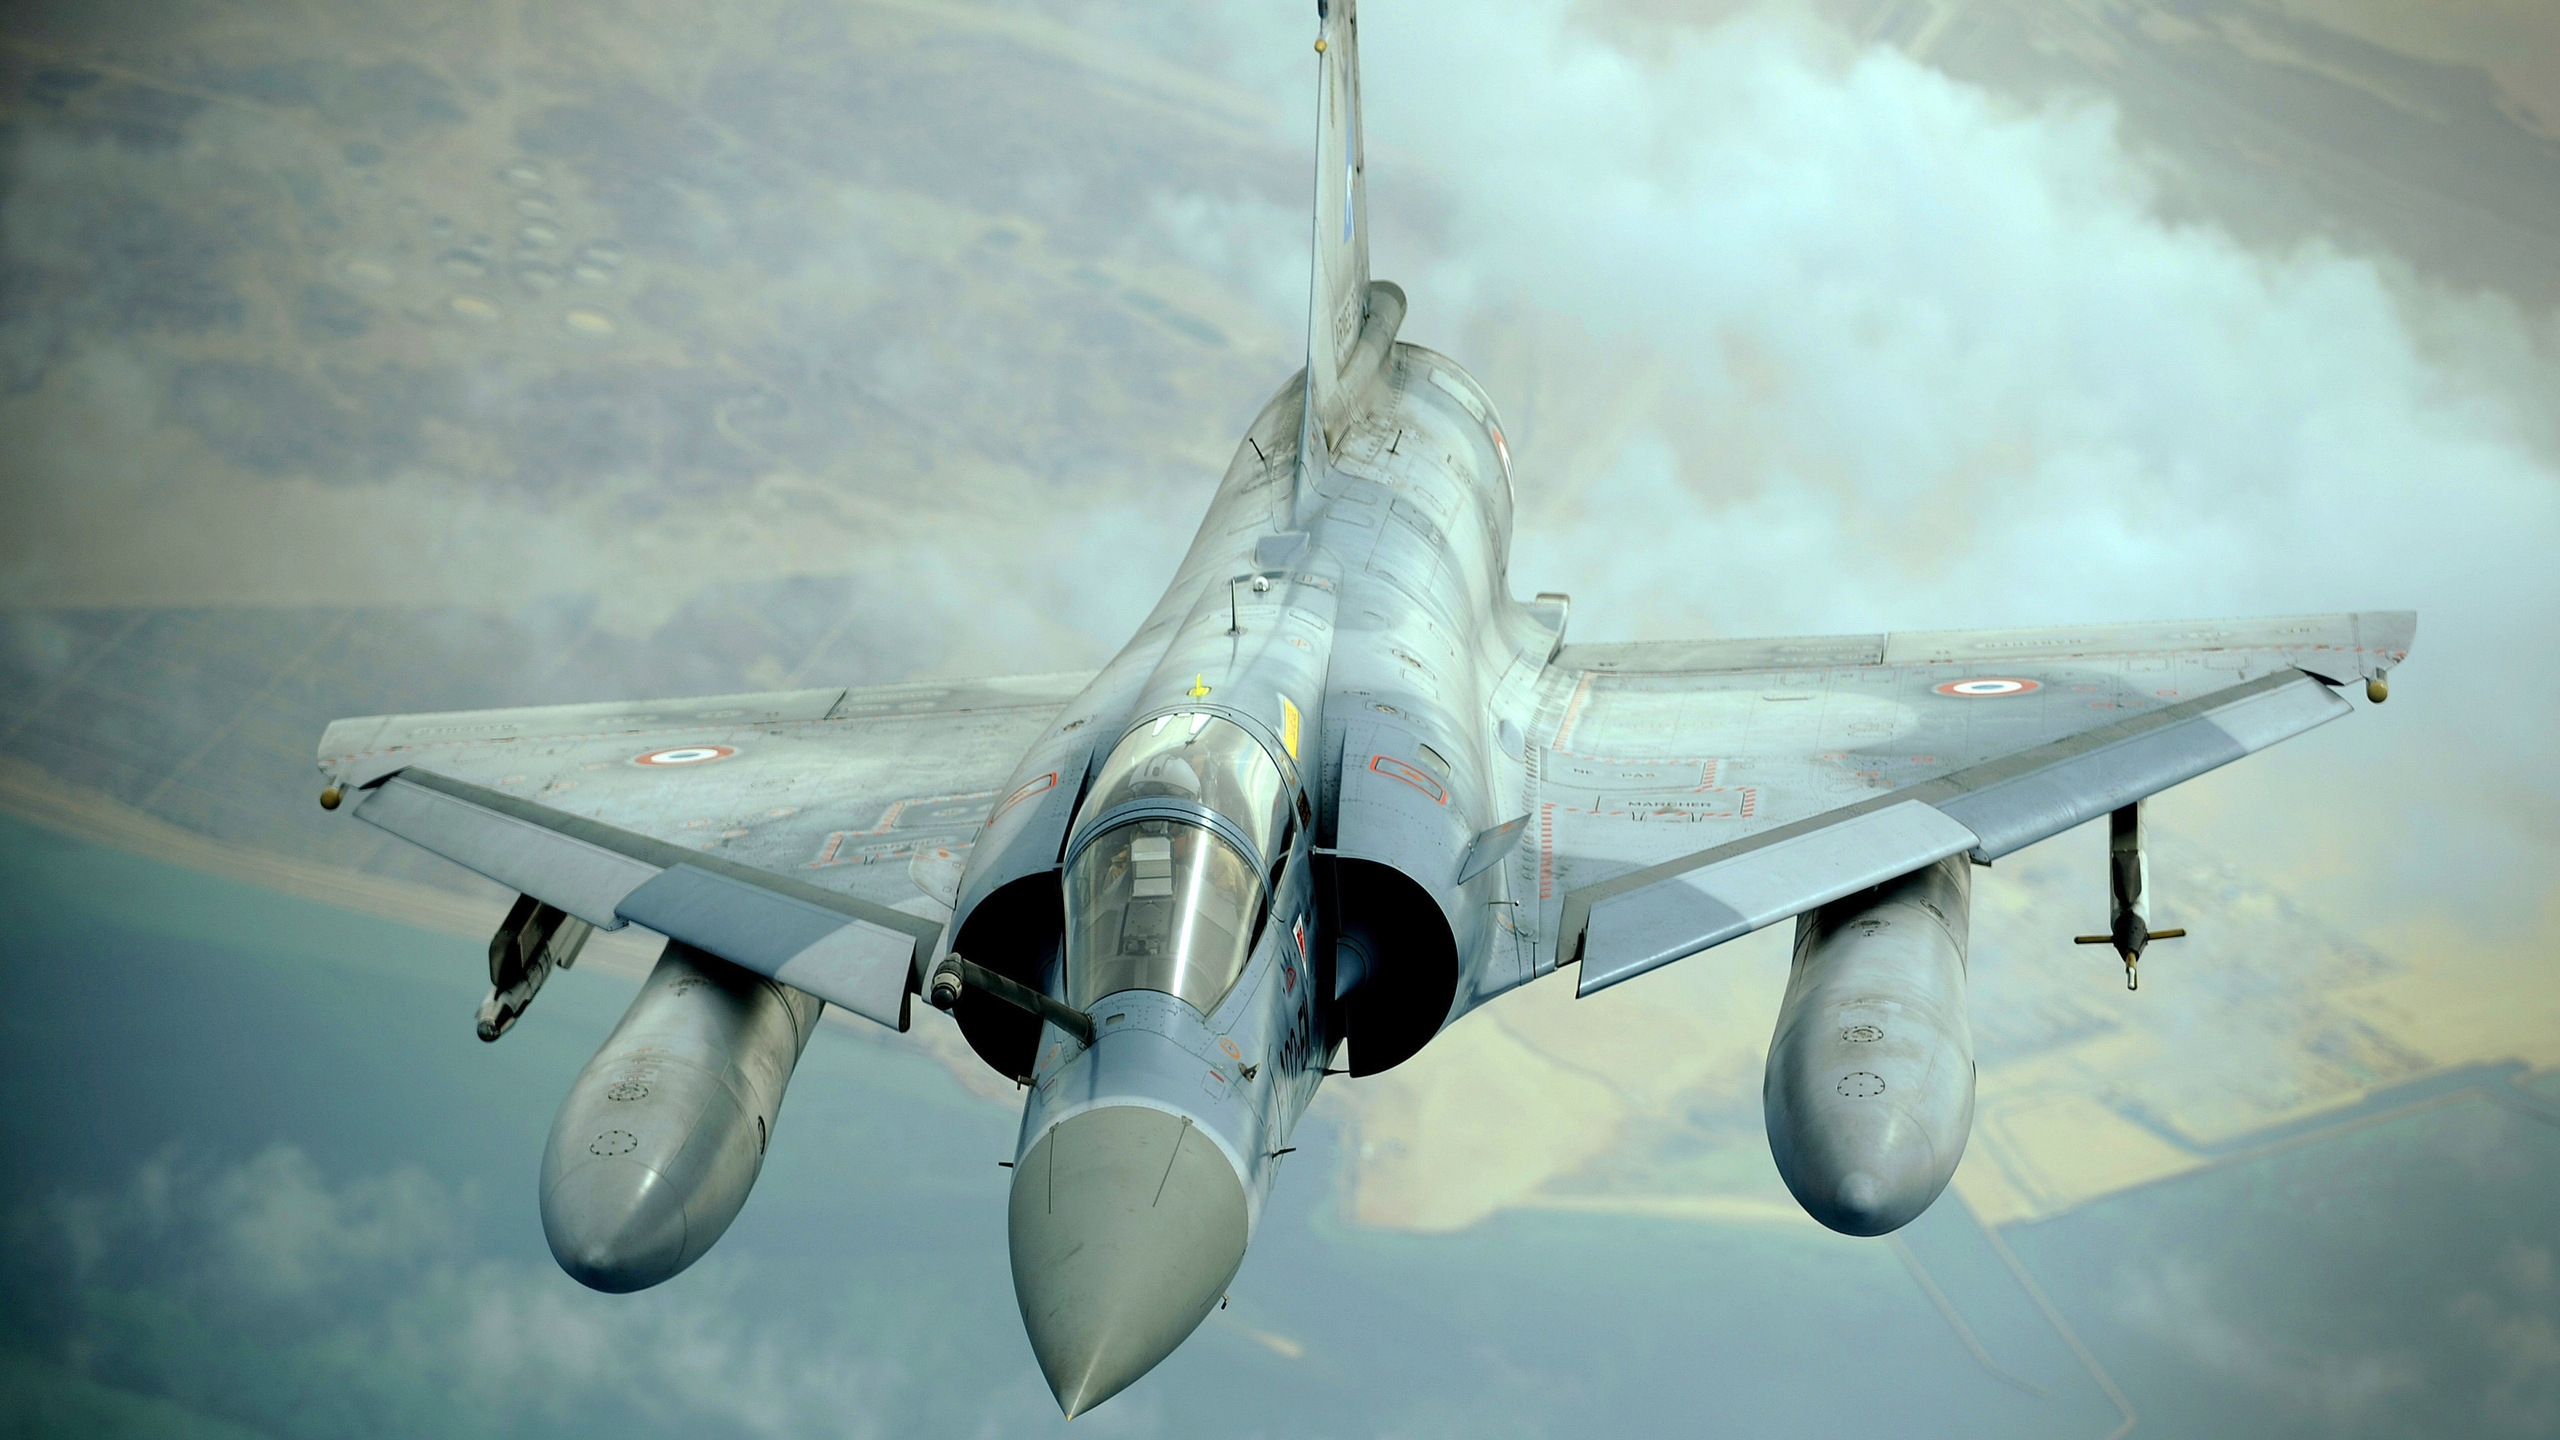 Dassault Mirage 2000 for 2560x1440 HDTV resolution